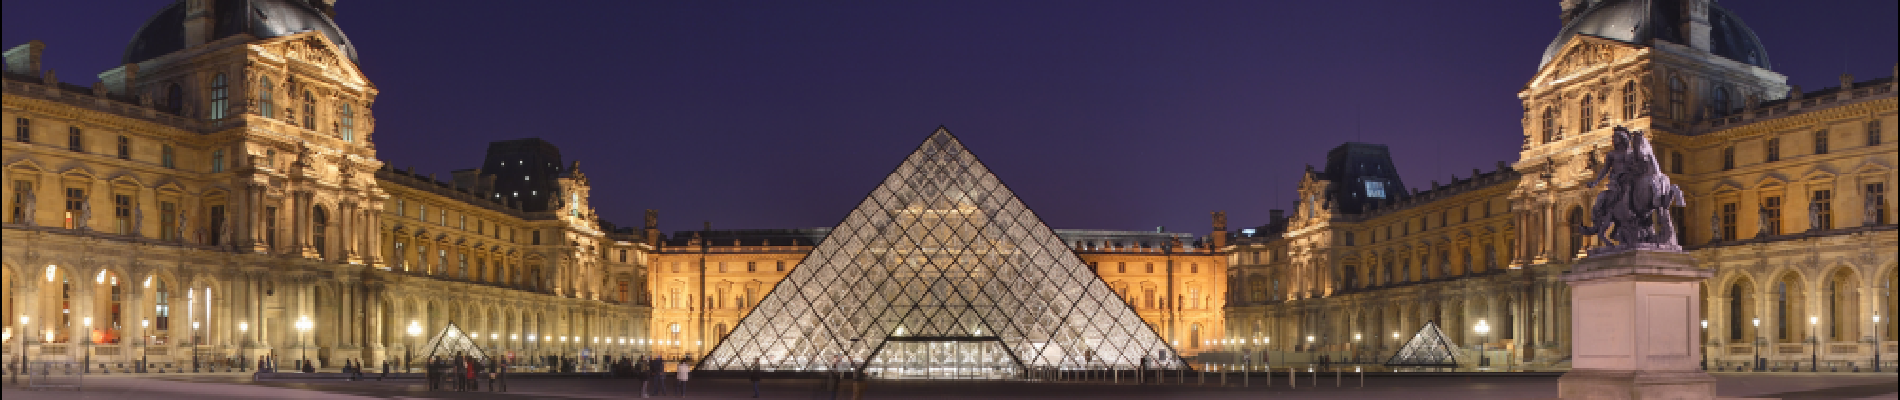 Punto de interés París - Pyramide du Louvre - Photo